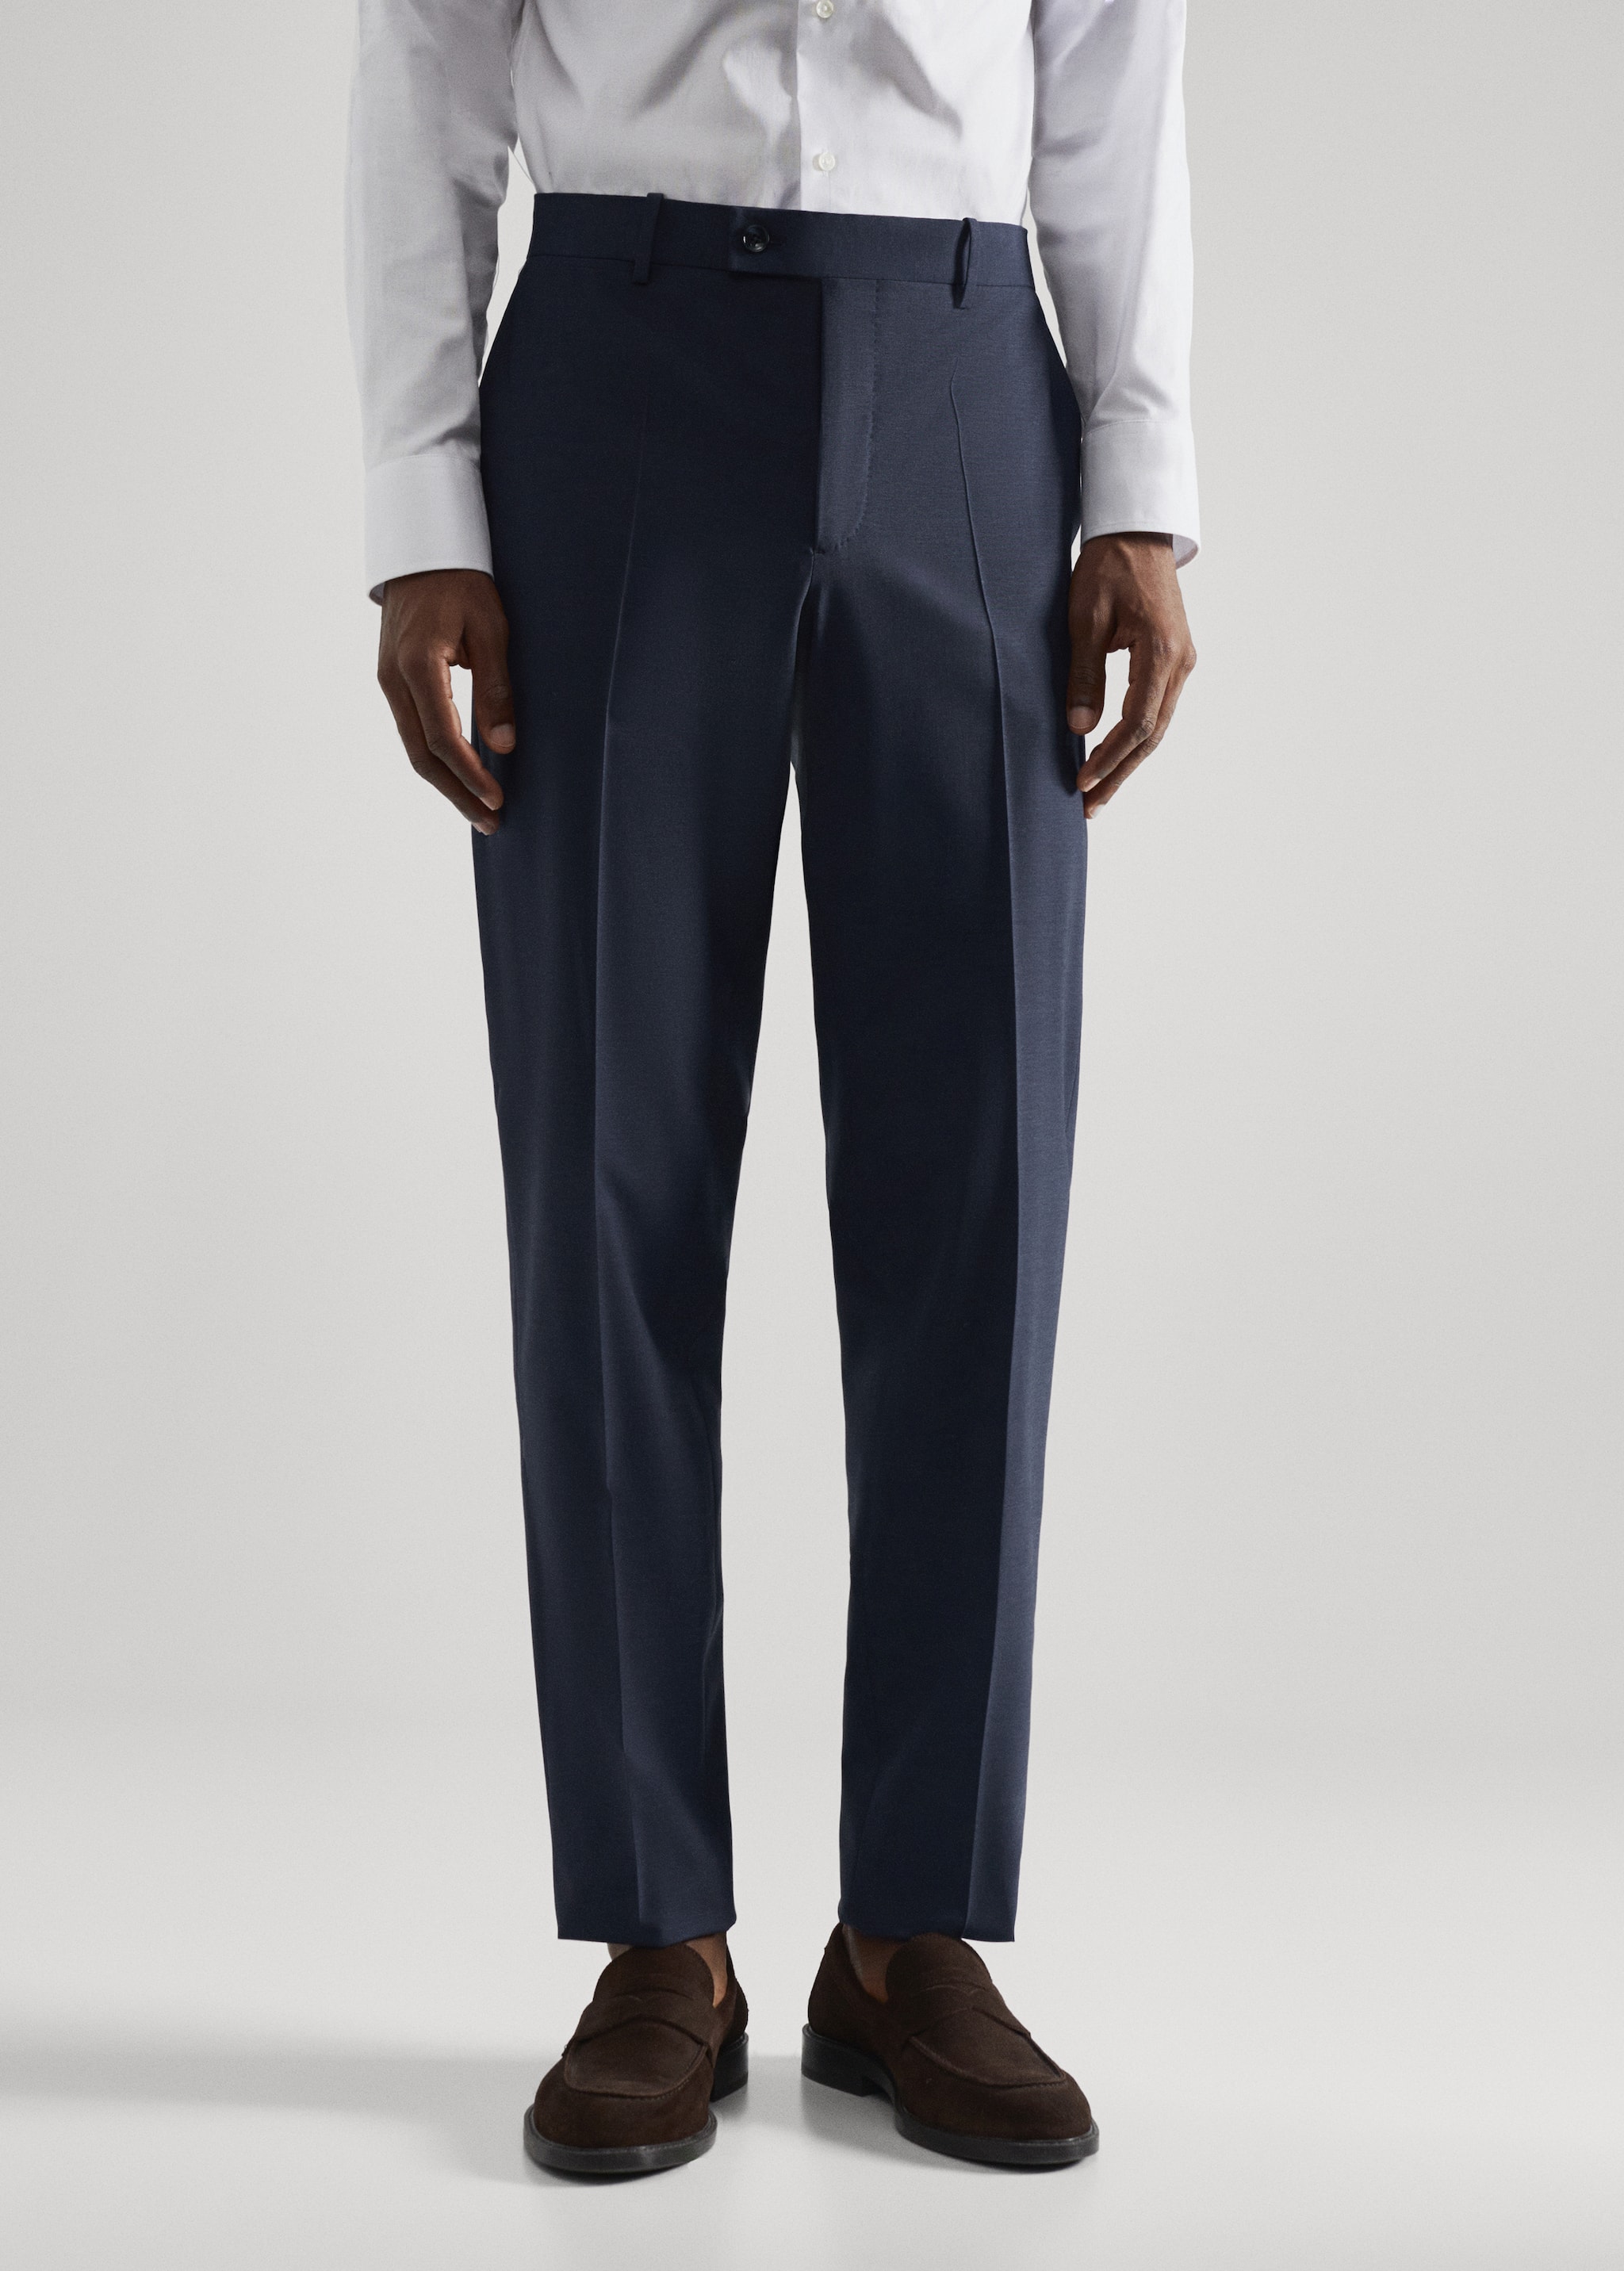 Slim fit wool suit pants - Medium plane